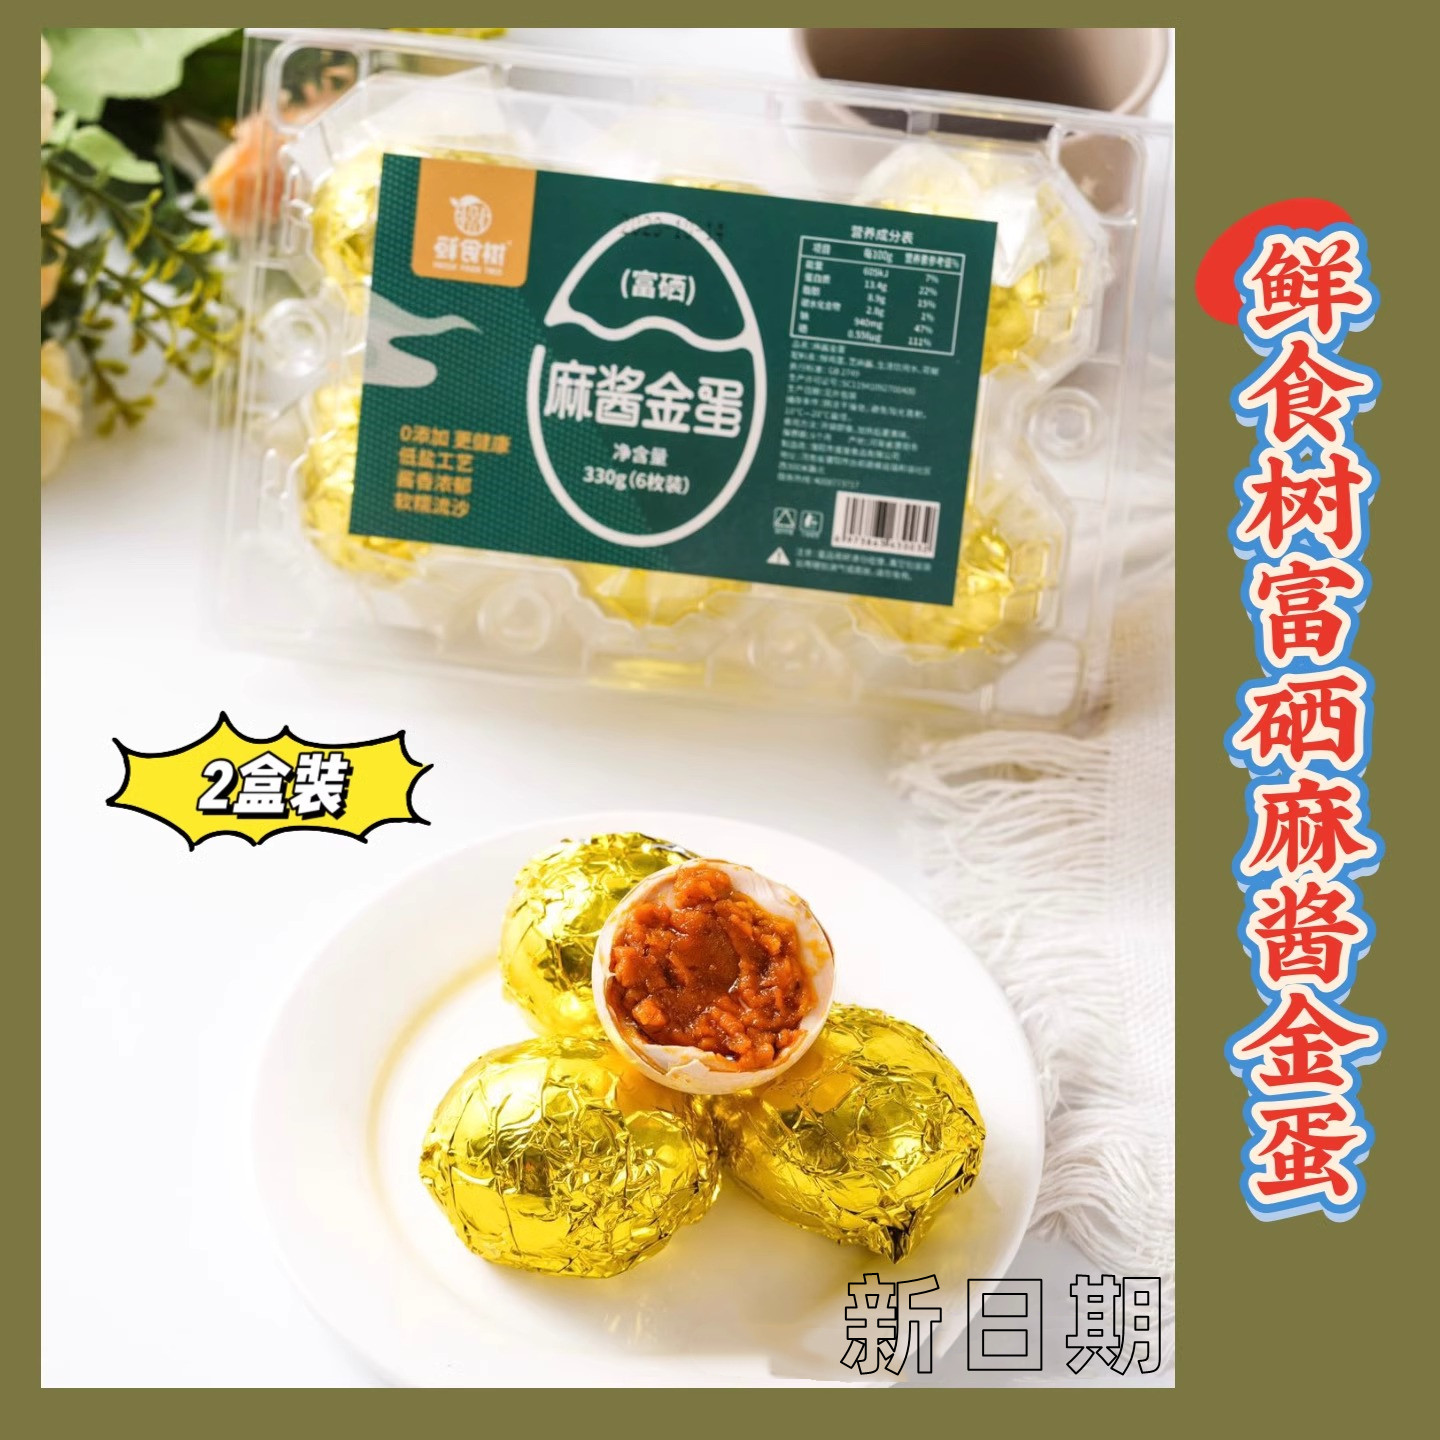 【2盒装】鲜食树富硒麻酱金蛋鸡蛋制作古法腌制五香味1盒6枚包邮